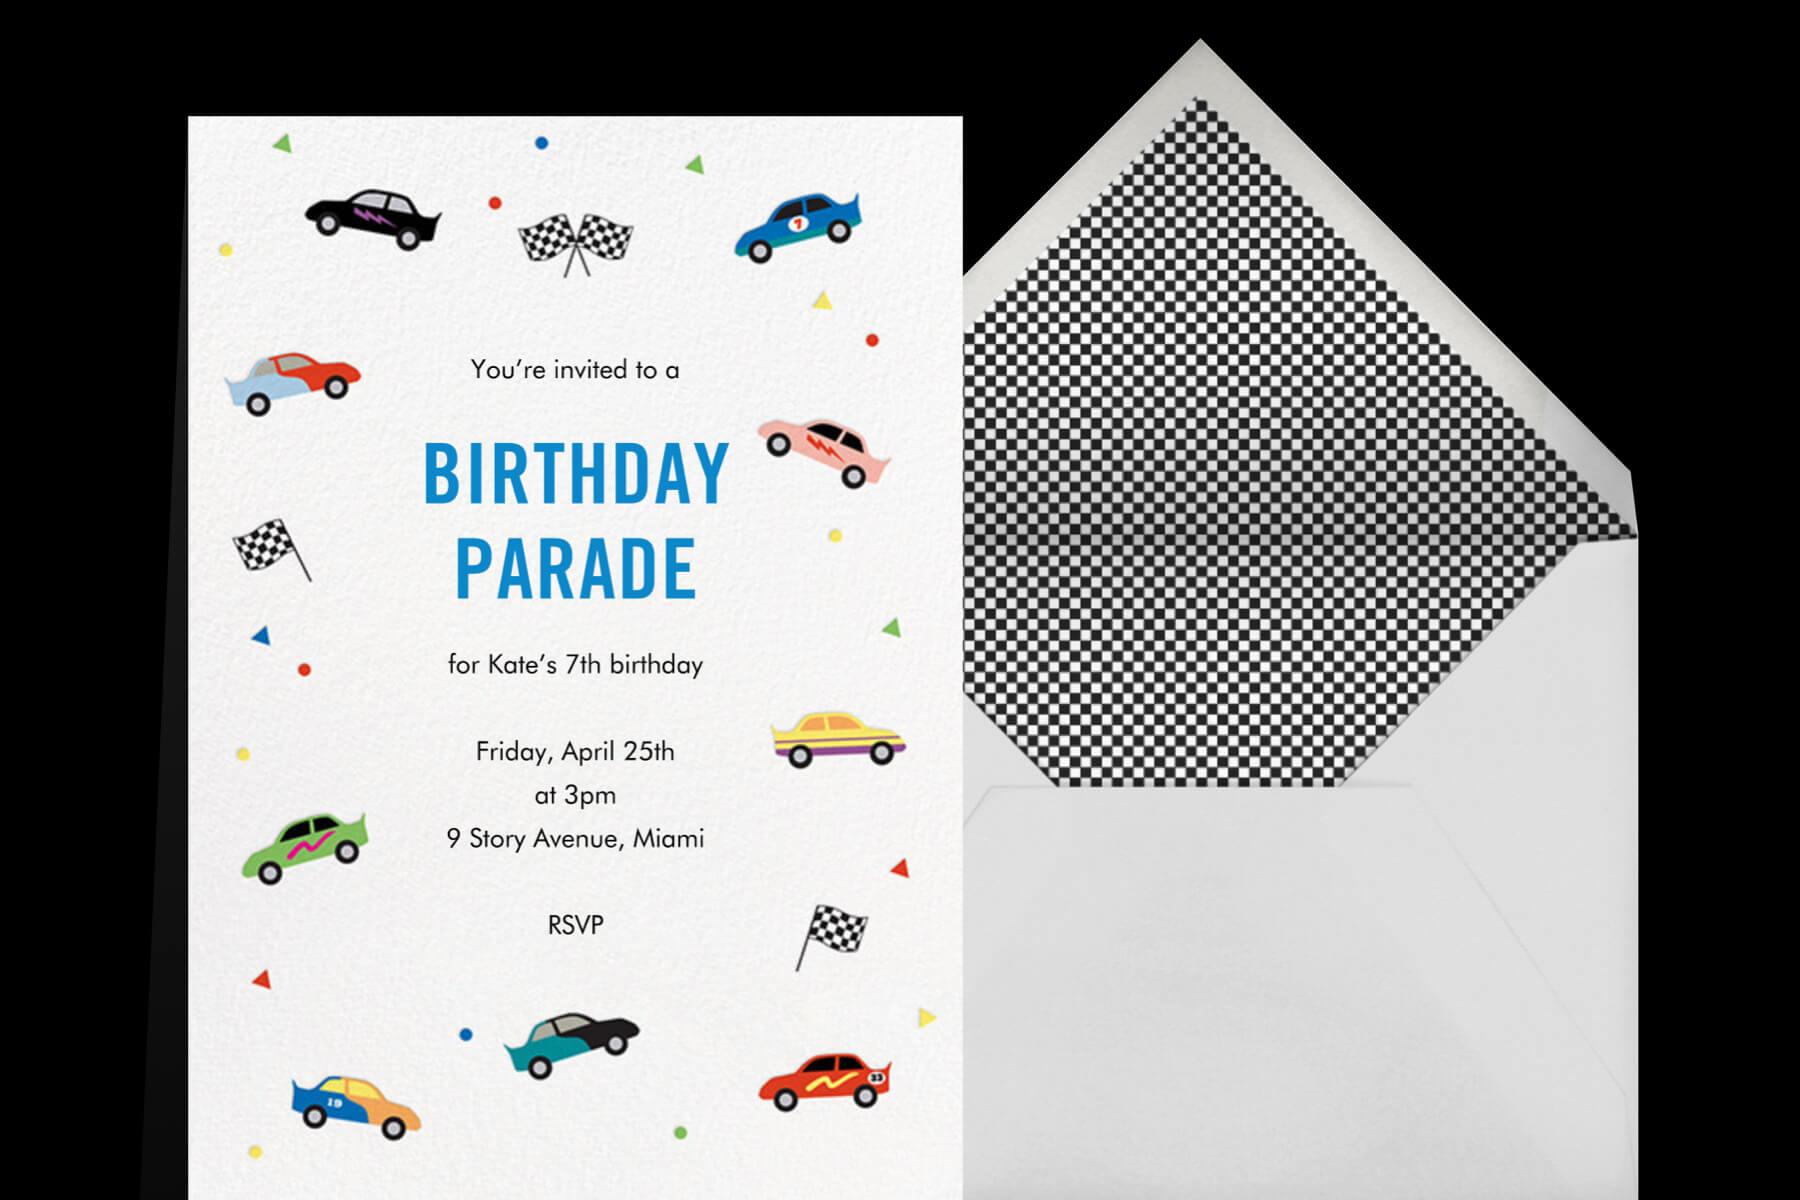 Car parade invitation